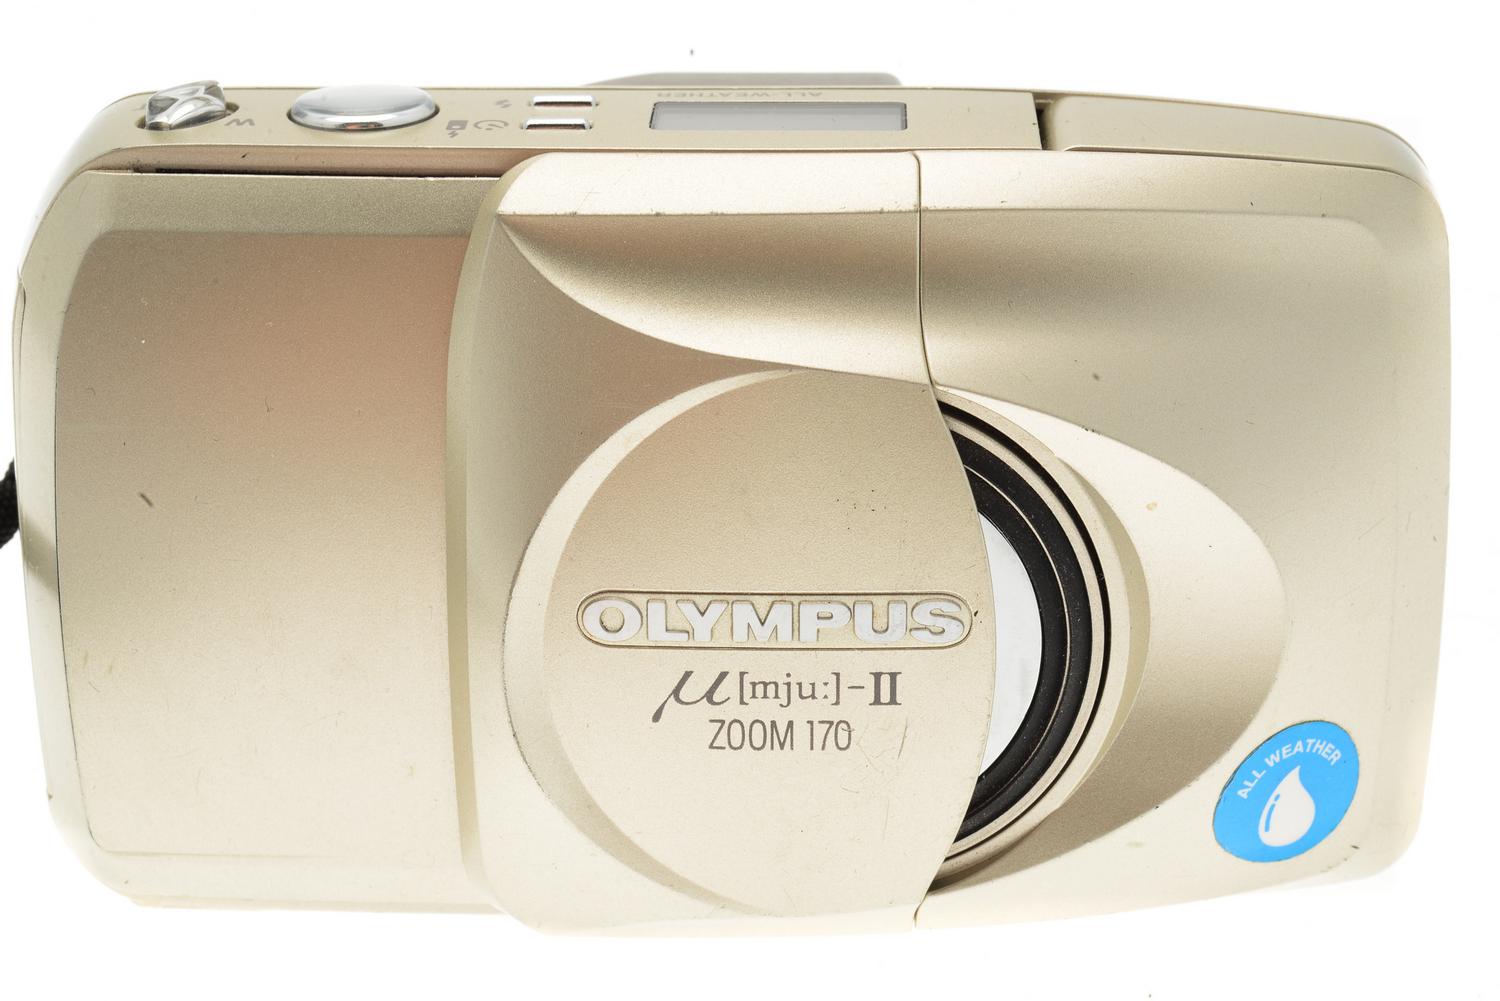 Olympus Mju-II Zoom 170 - Camera – Kamerastore